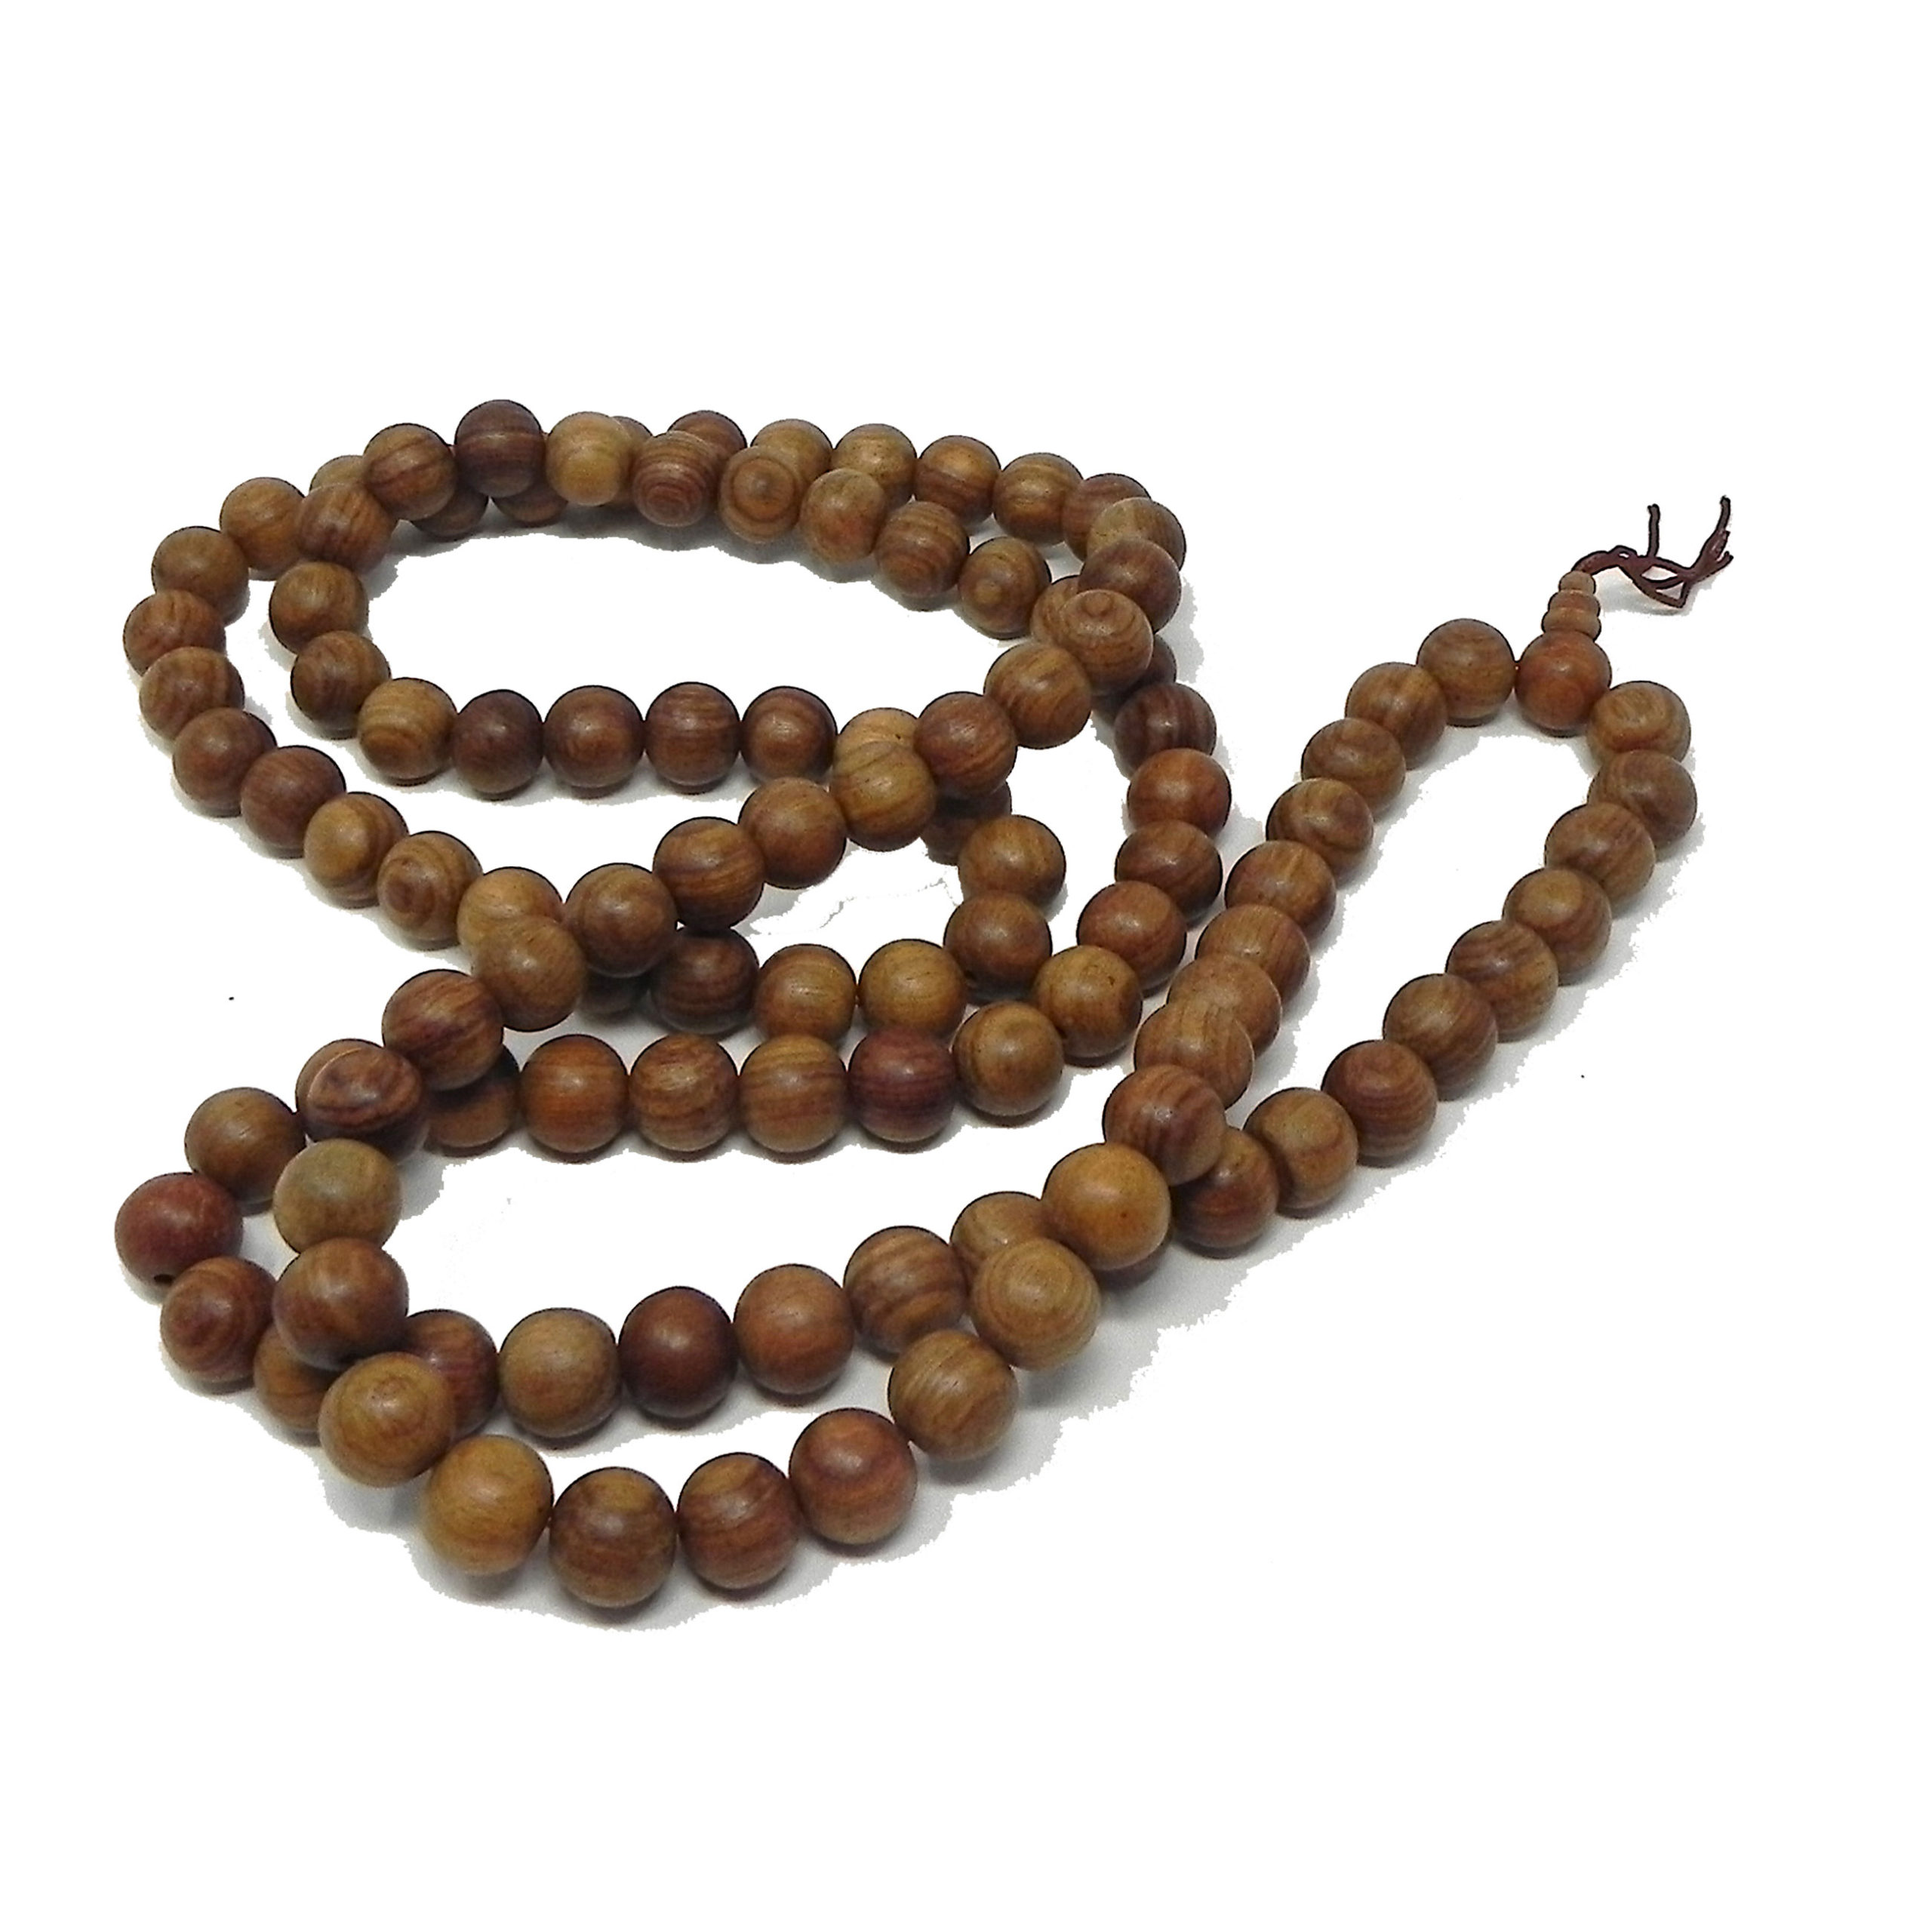 Sandalwood Necklace Yoga Meditation Mala Beads, For Religious